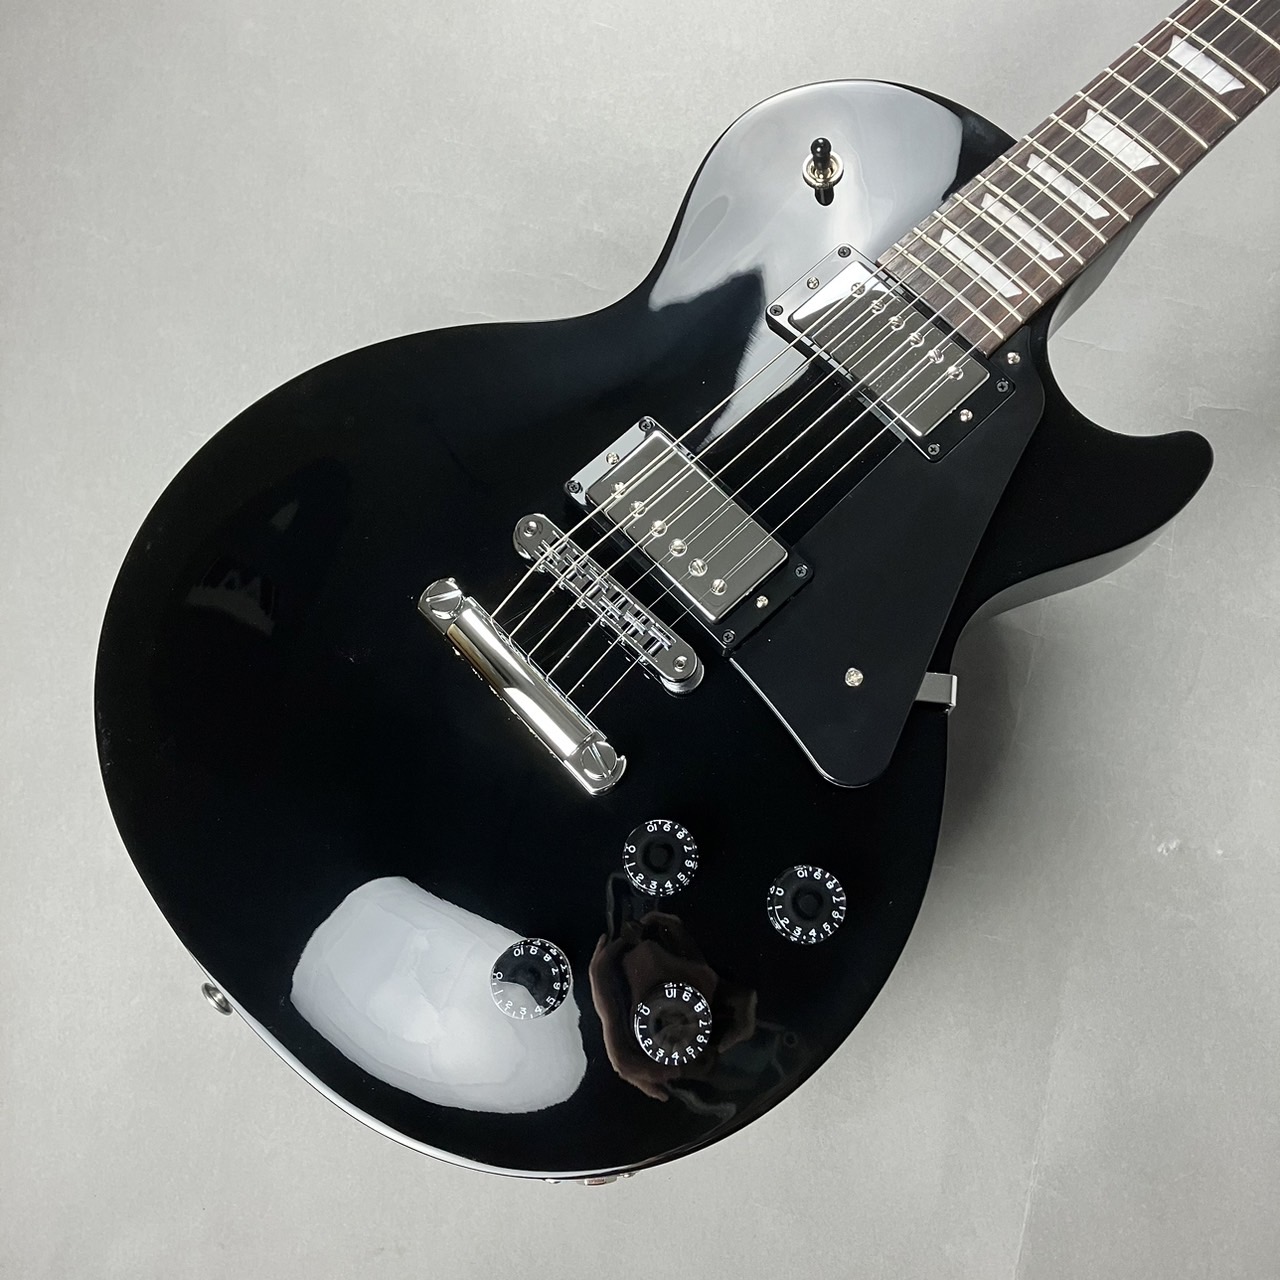 ギブソンレスポールスタジオDC黒8万円で購入させて下さい - ギター